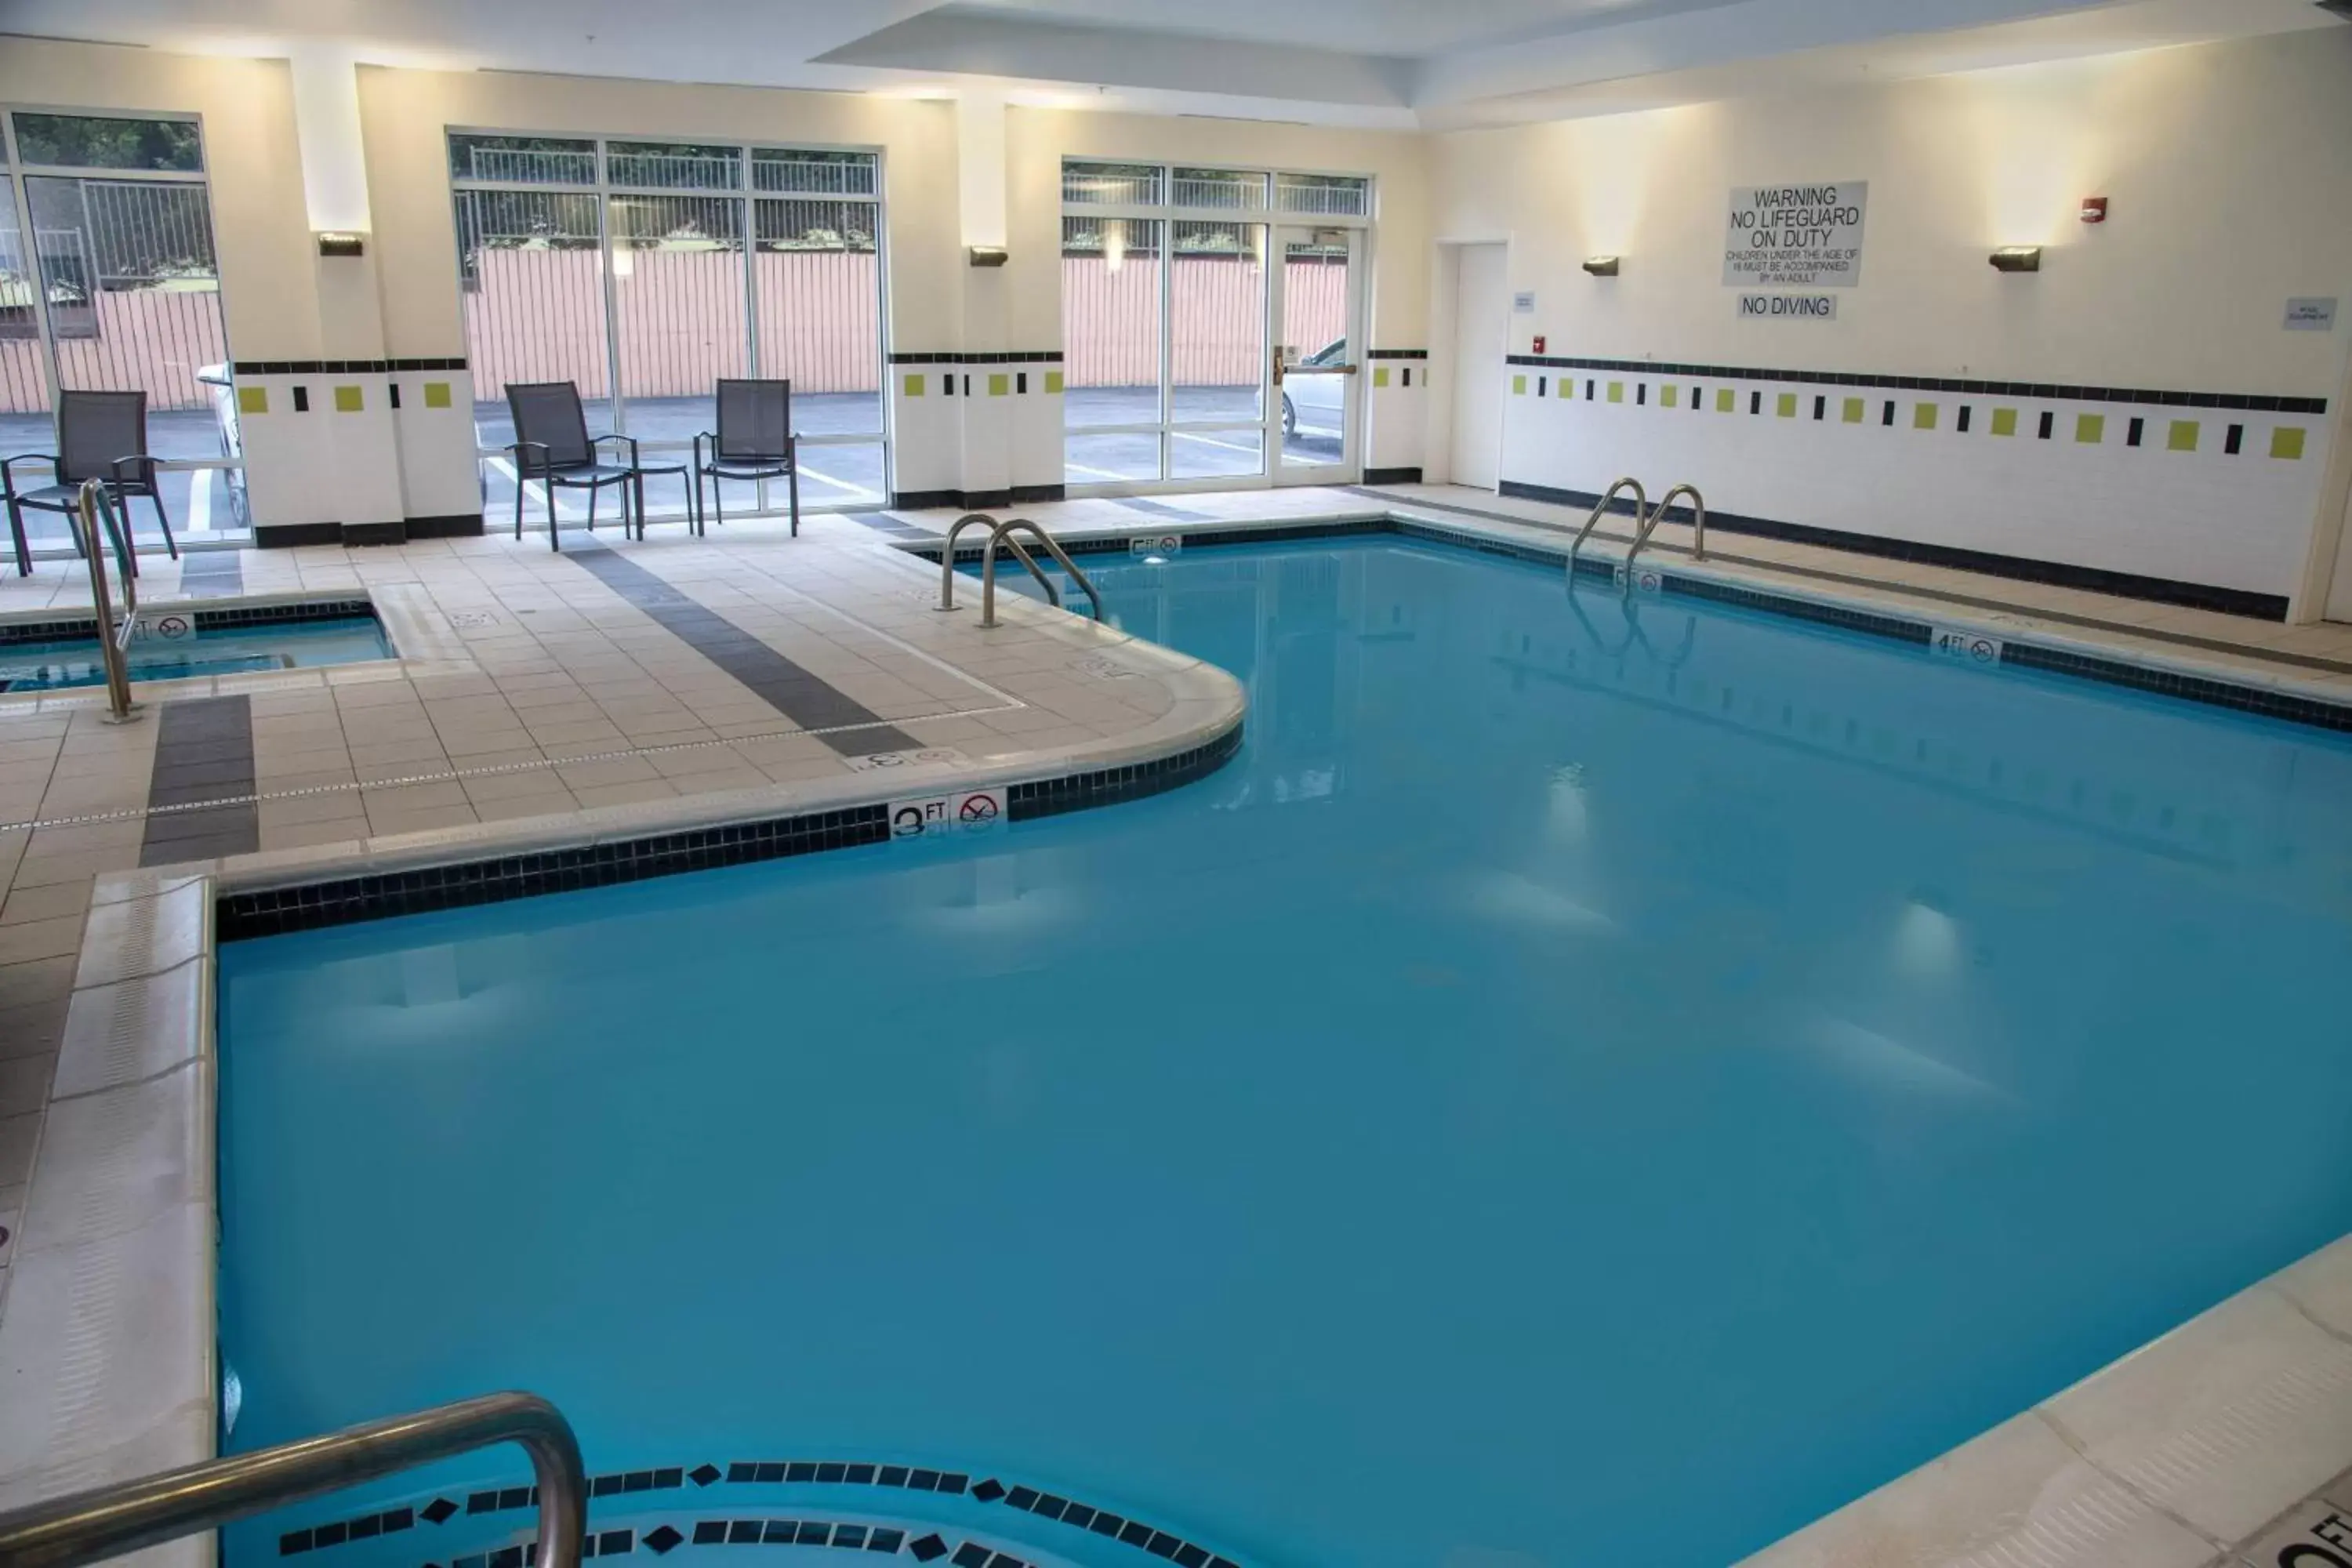 Swimming Pool in Fairfield Inn & Suites Lewisburg